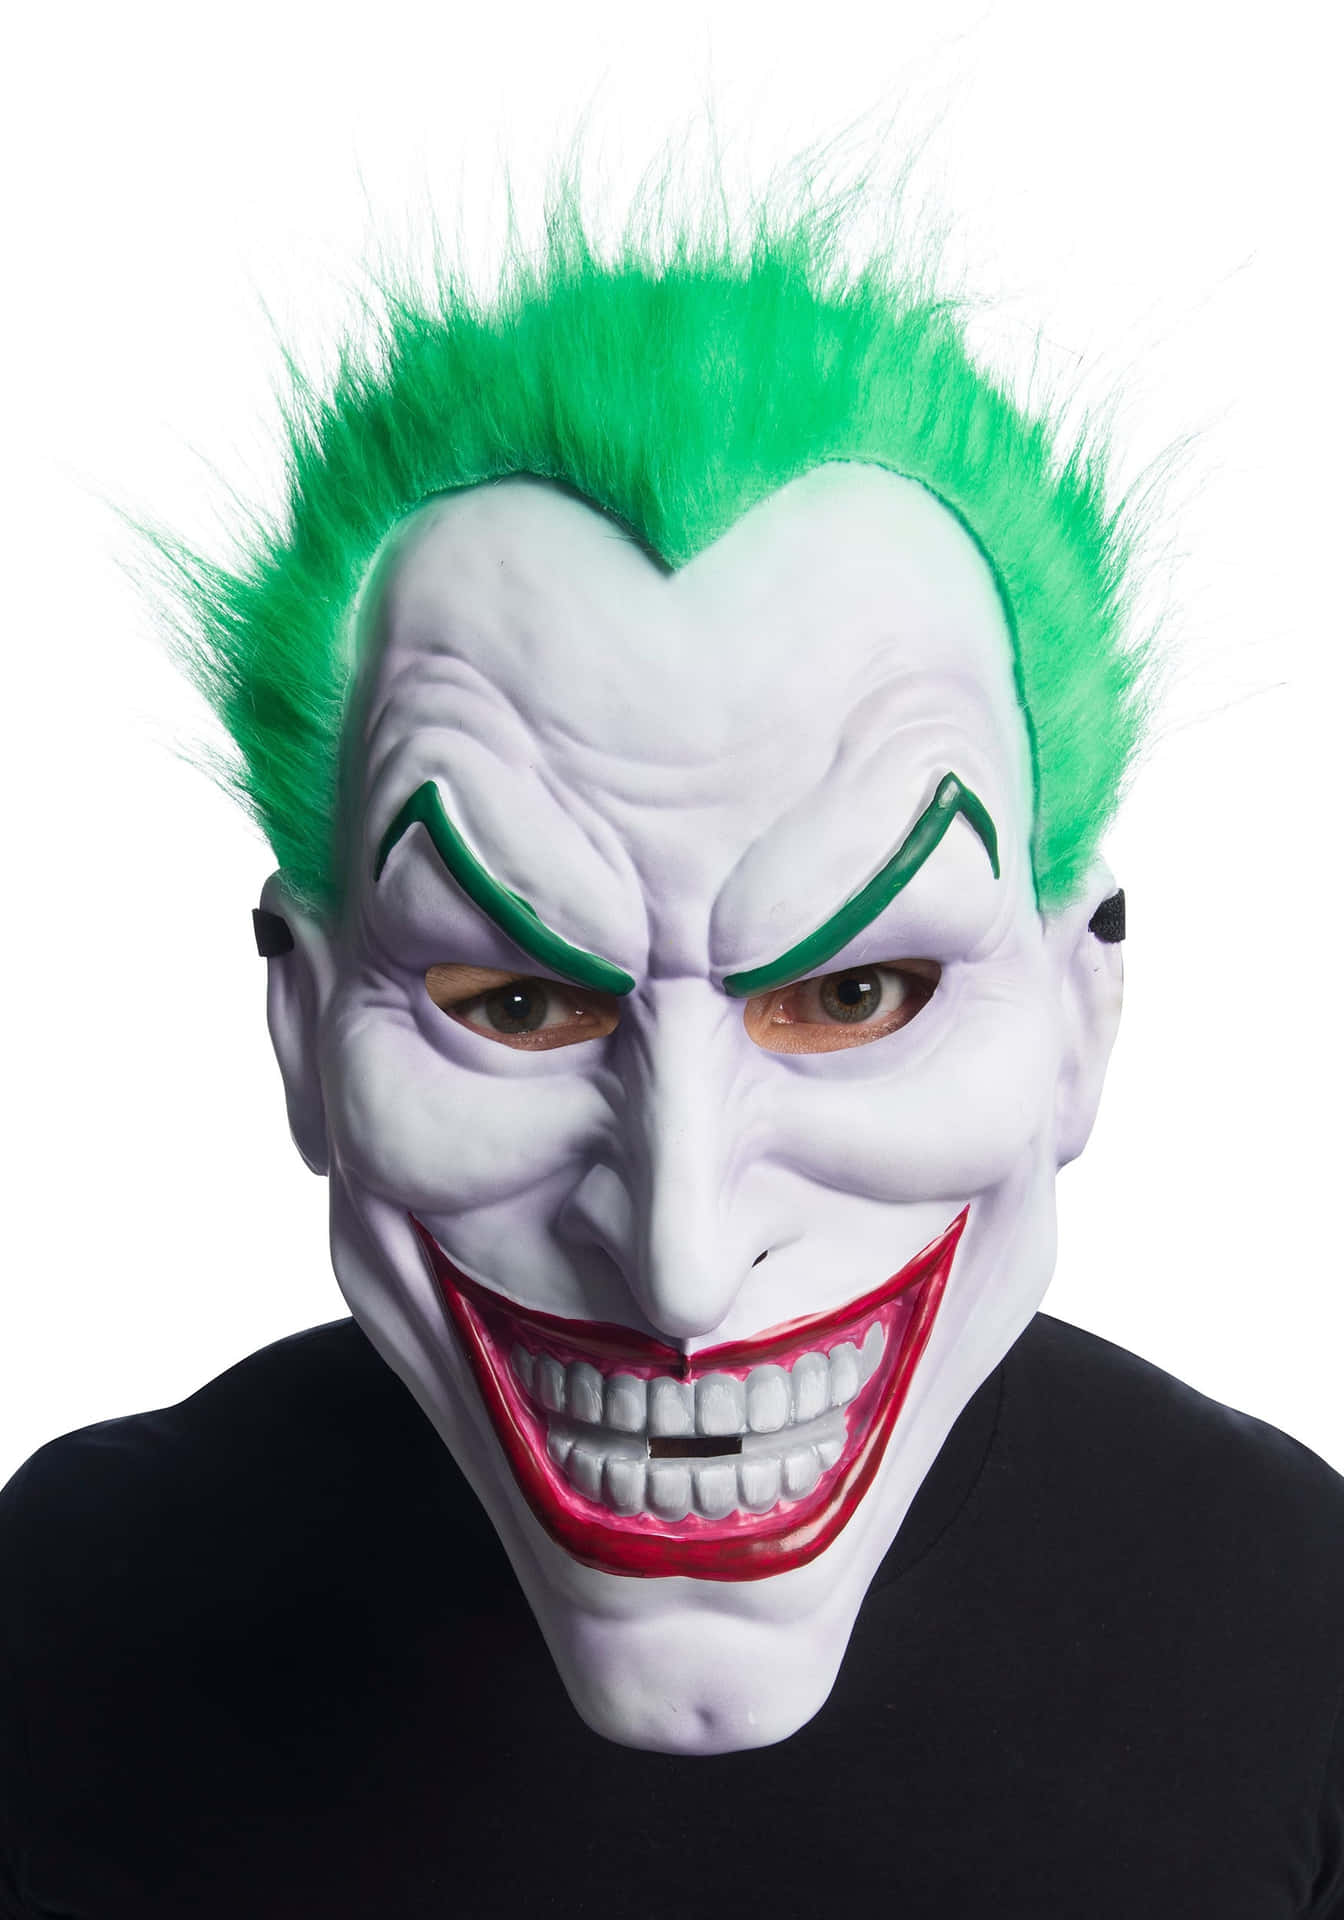 Läggtill Lite Extra Gnista Till Din Halloween Med Den Ikoniska Joker-masken Genom Att Använda Den Som Bakgrundsbild På Din Dator Eller Mobil.